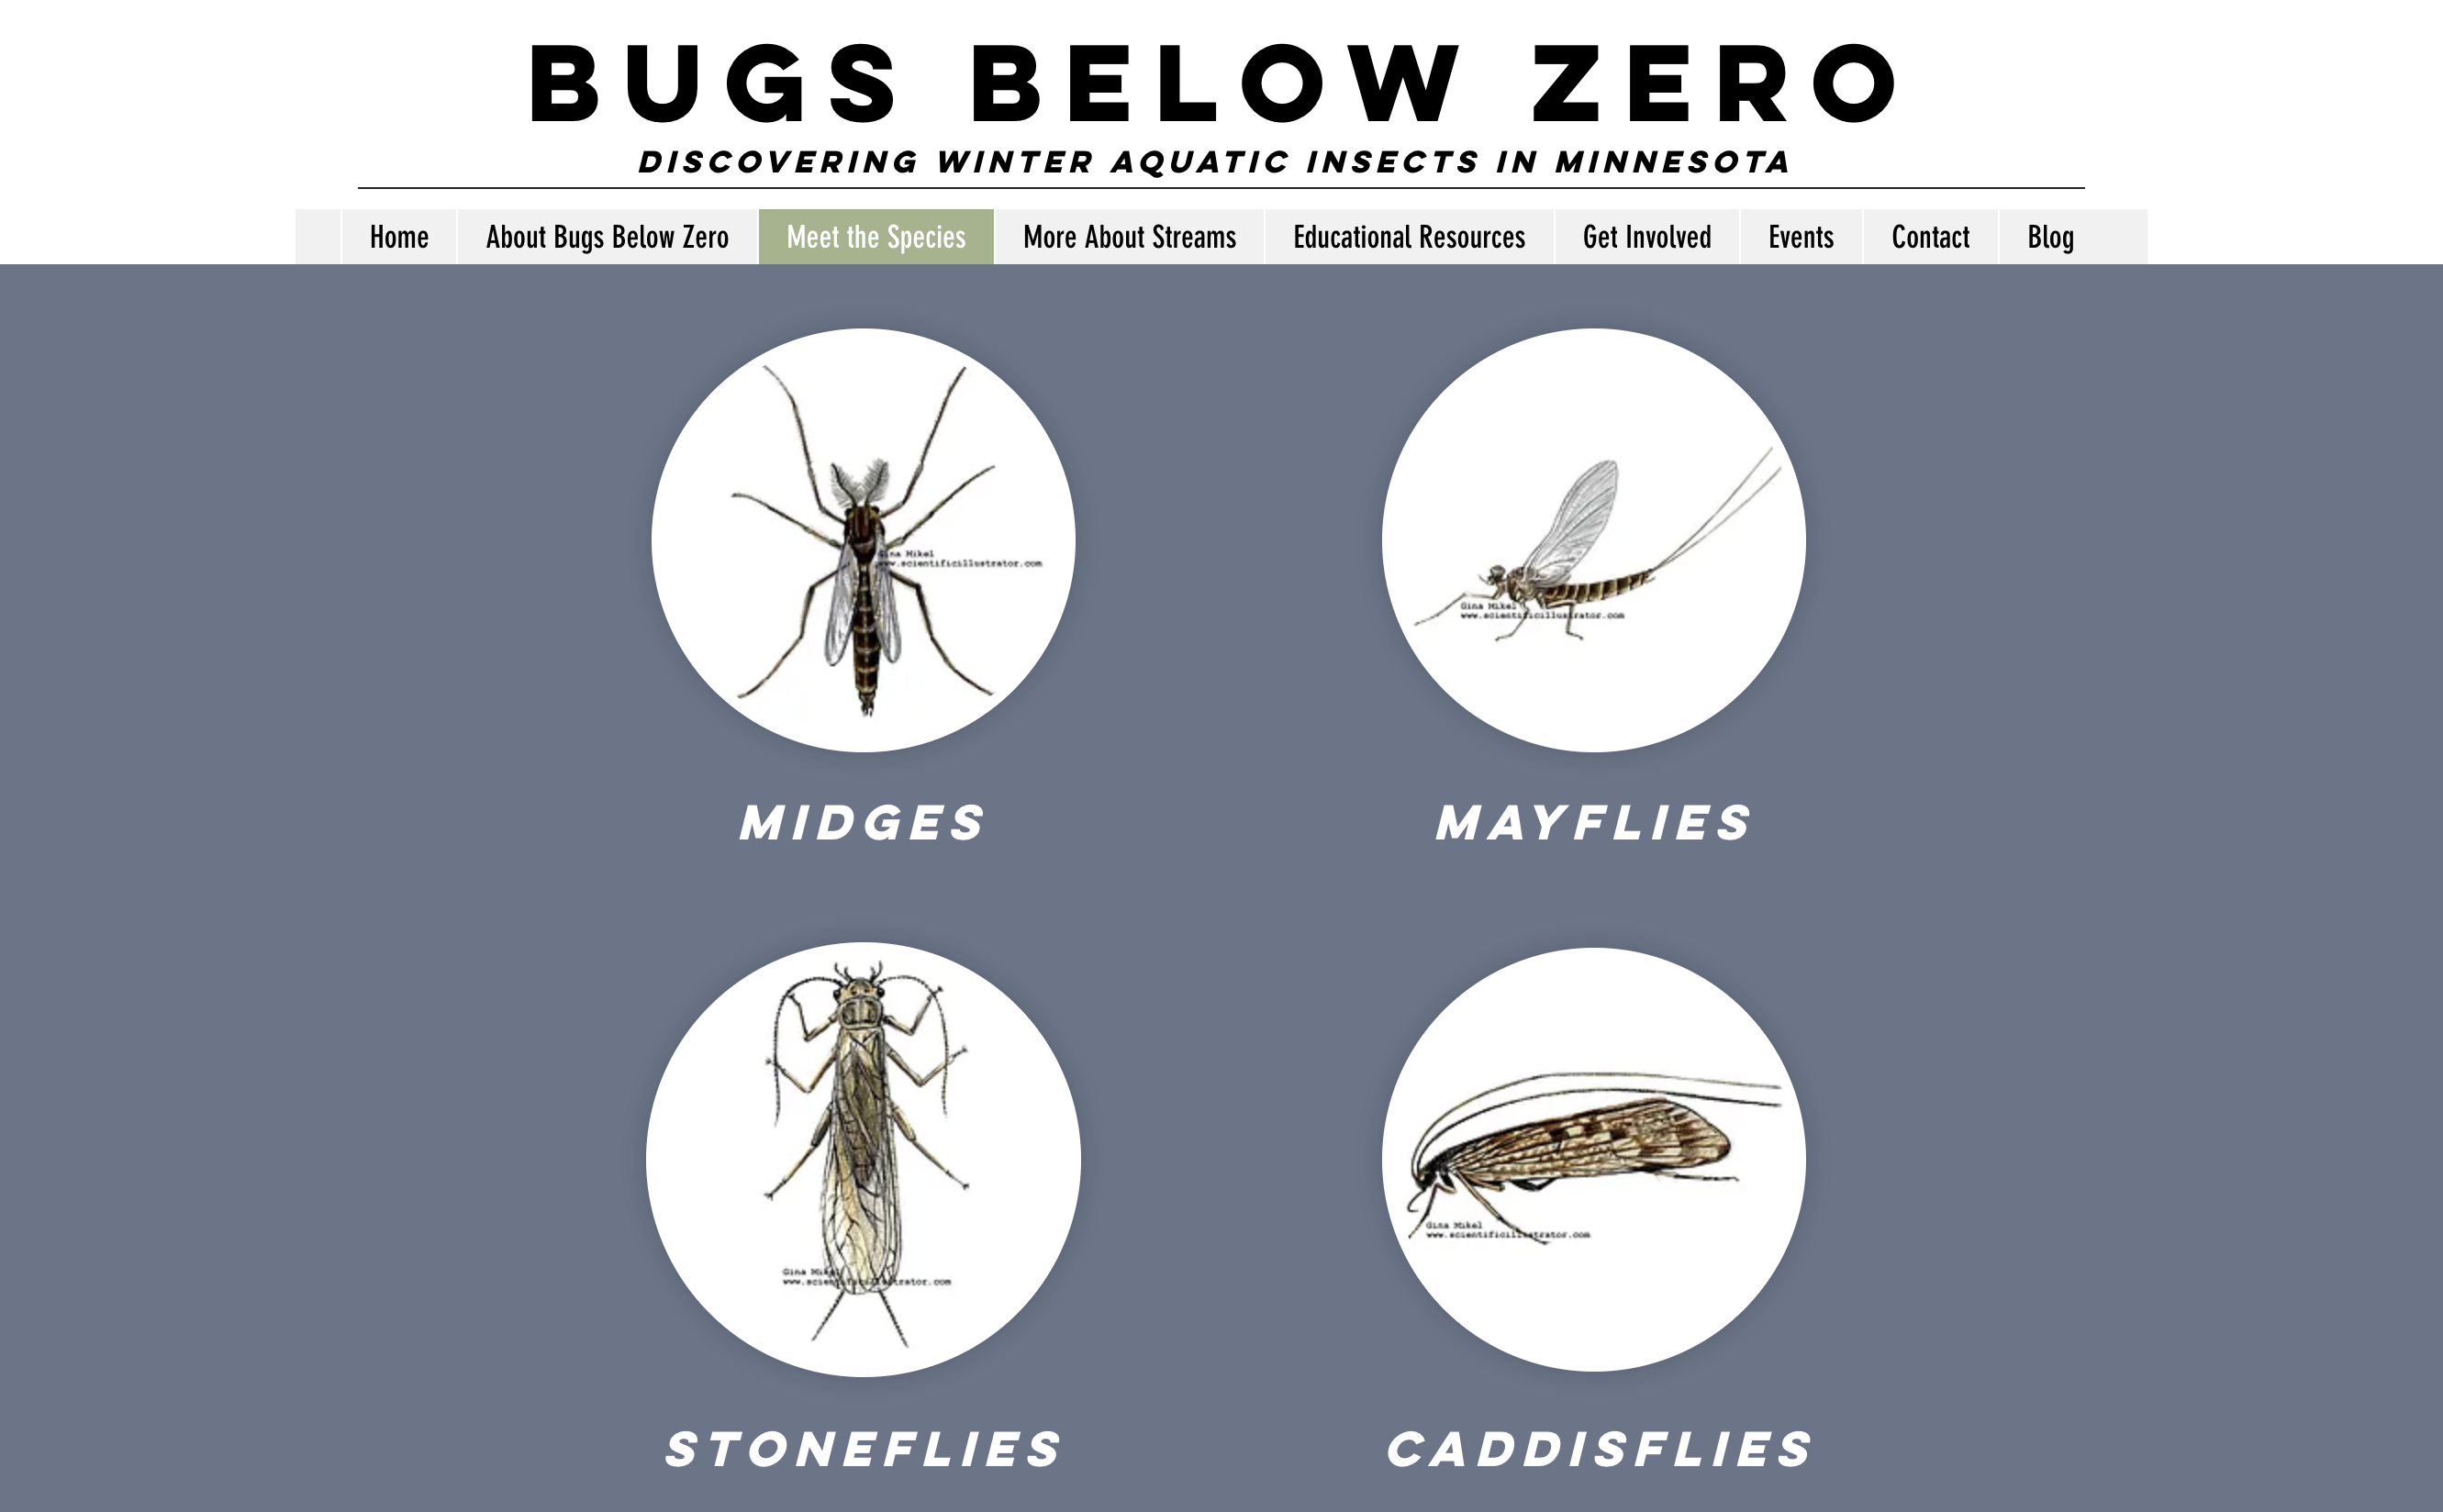 Screen shot of the Bugs Below Zero website